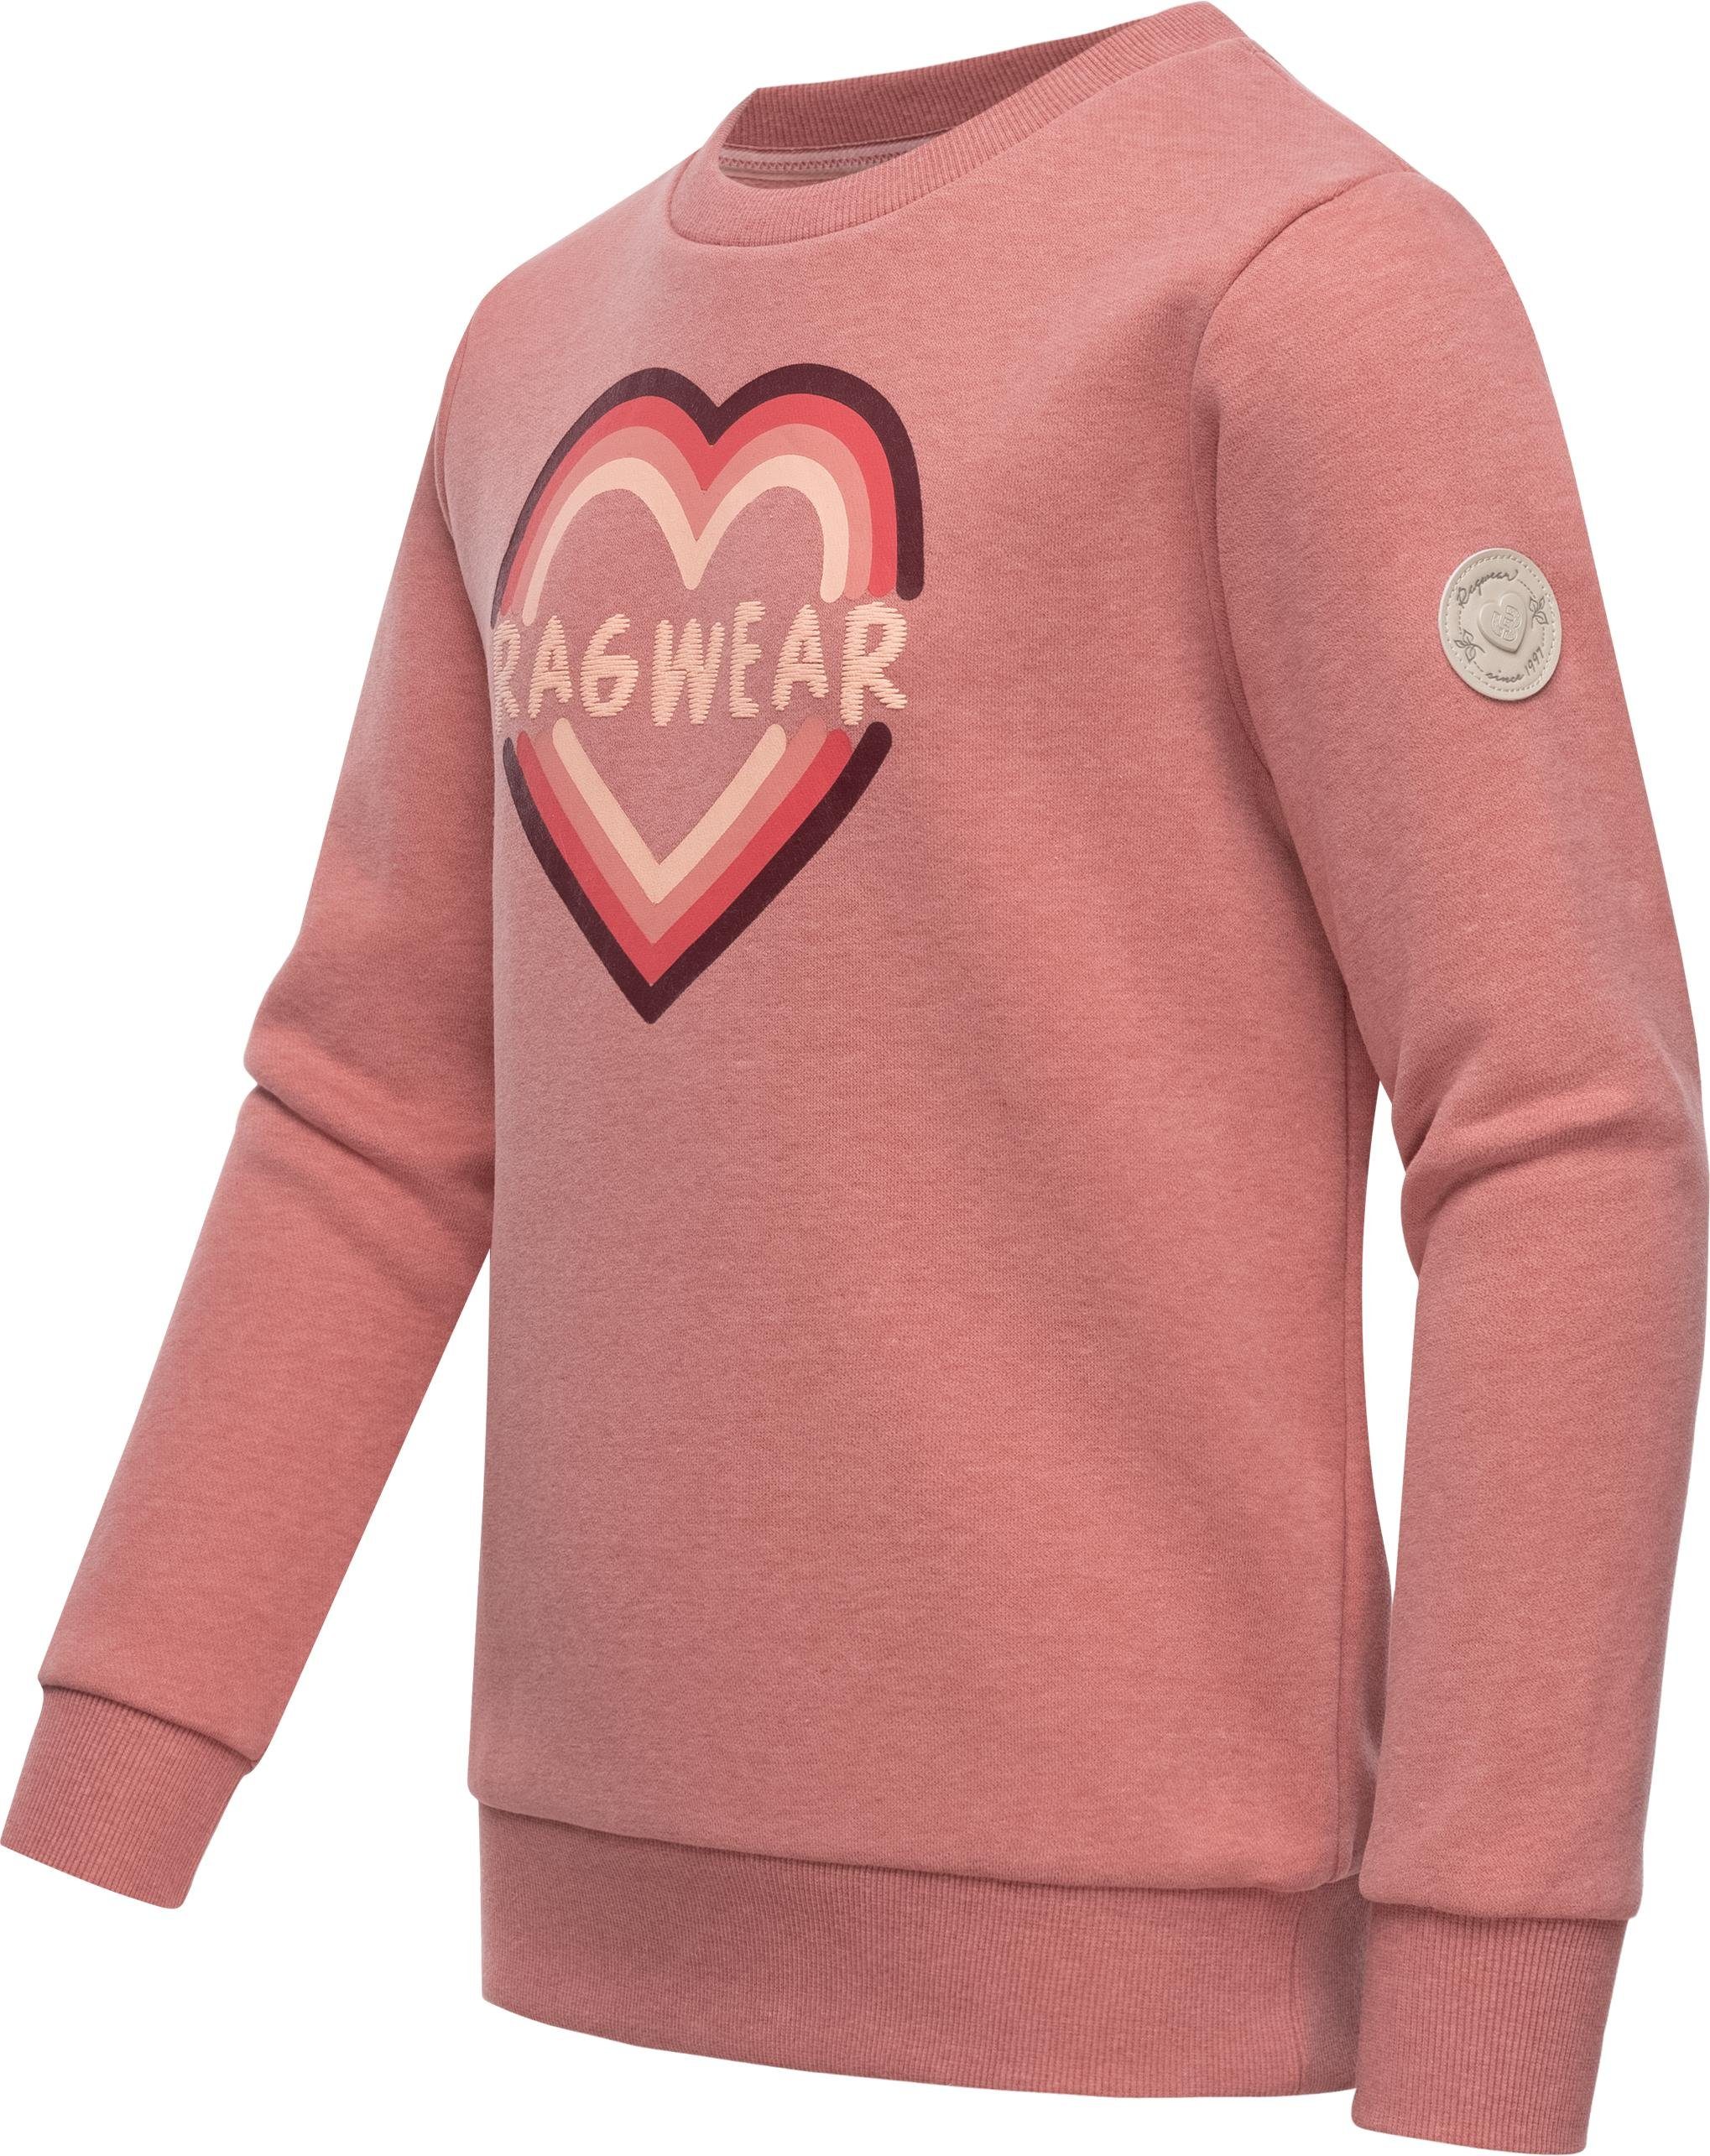 Print coolem Mädchen stylisches Print rosa Evka mit Sweatshirt Sweater Logo Ragwear